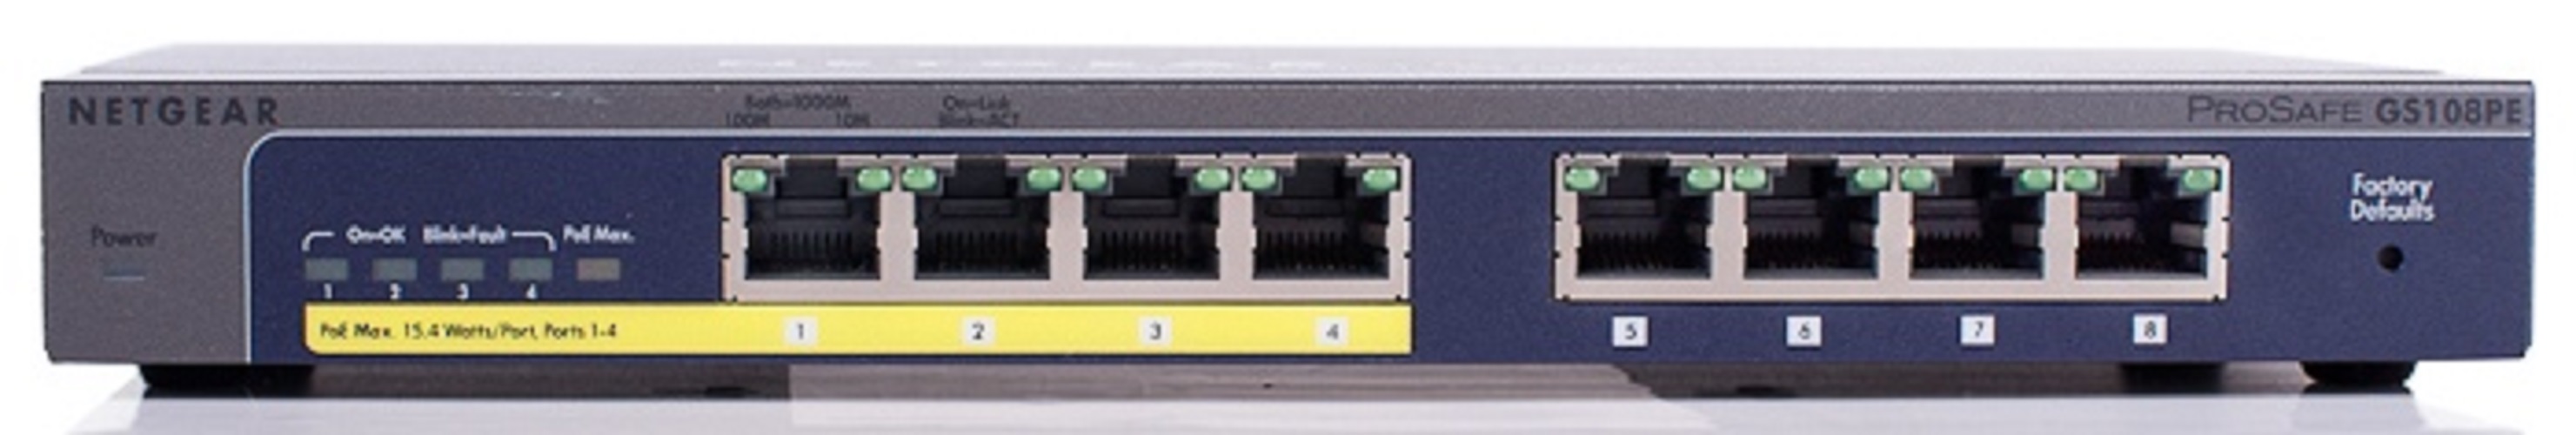 Bộ Chia Mạng Để Bàn 8 Cổng 10/100/1000M Với 4 Cổng PoE Gigabit Ethernet Smart Switch Netgear GS108PE - Hàng Chính Hãng